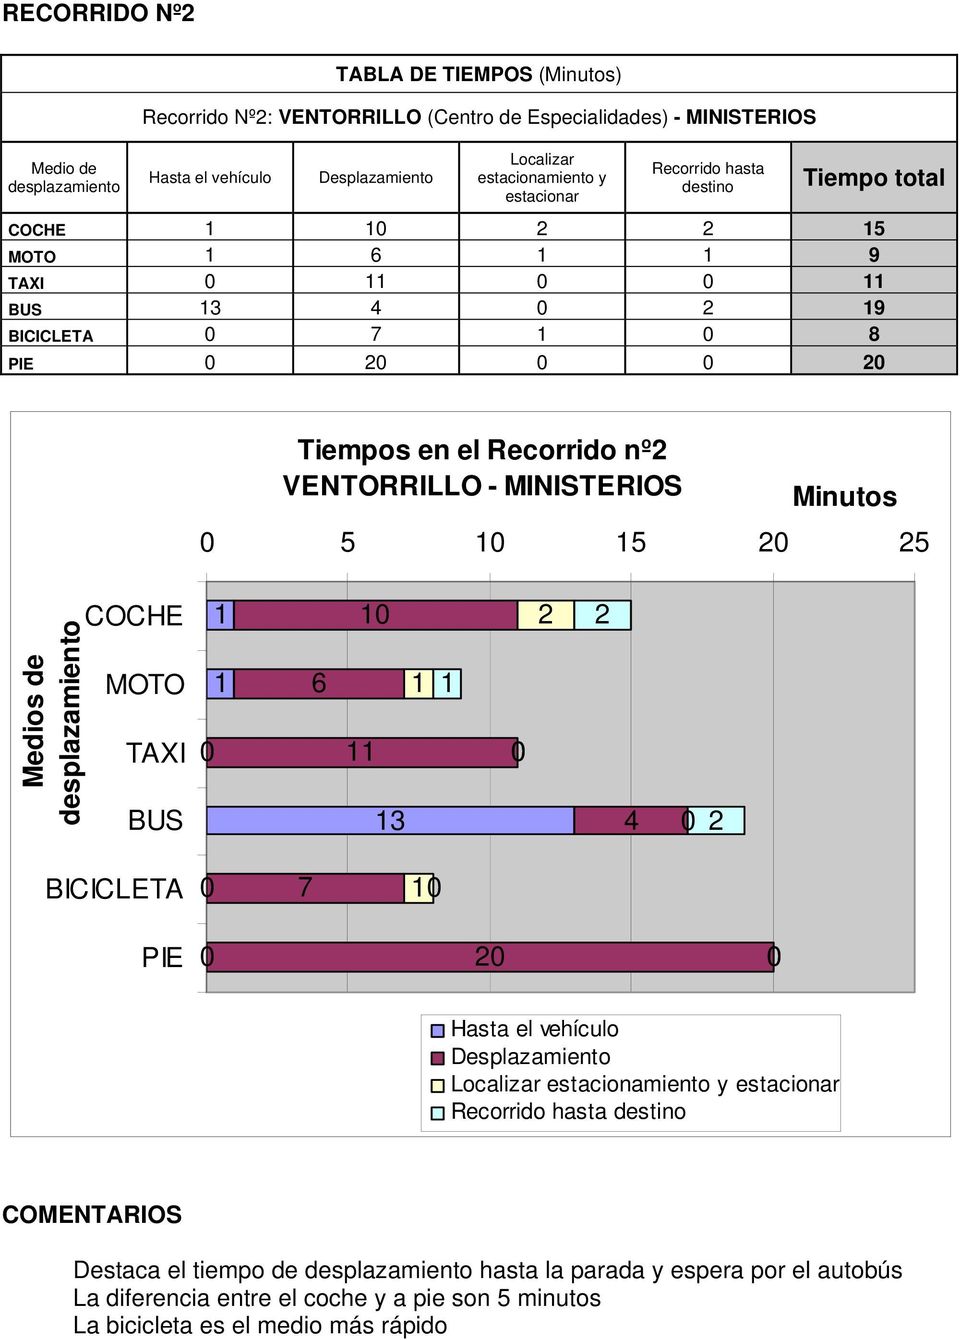 VENTORRILLO - MINISTERIOS Minutos 5 5 5 Medios de 6 3 4 BICICLETA Localizar estacionamiento y estacionar Recorrido hasta